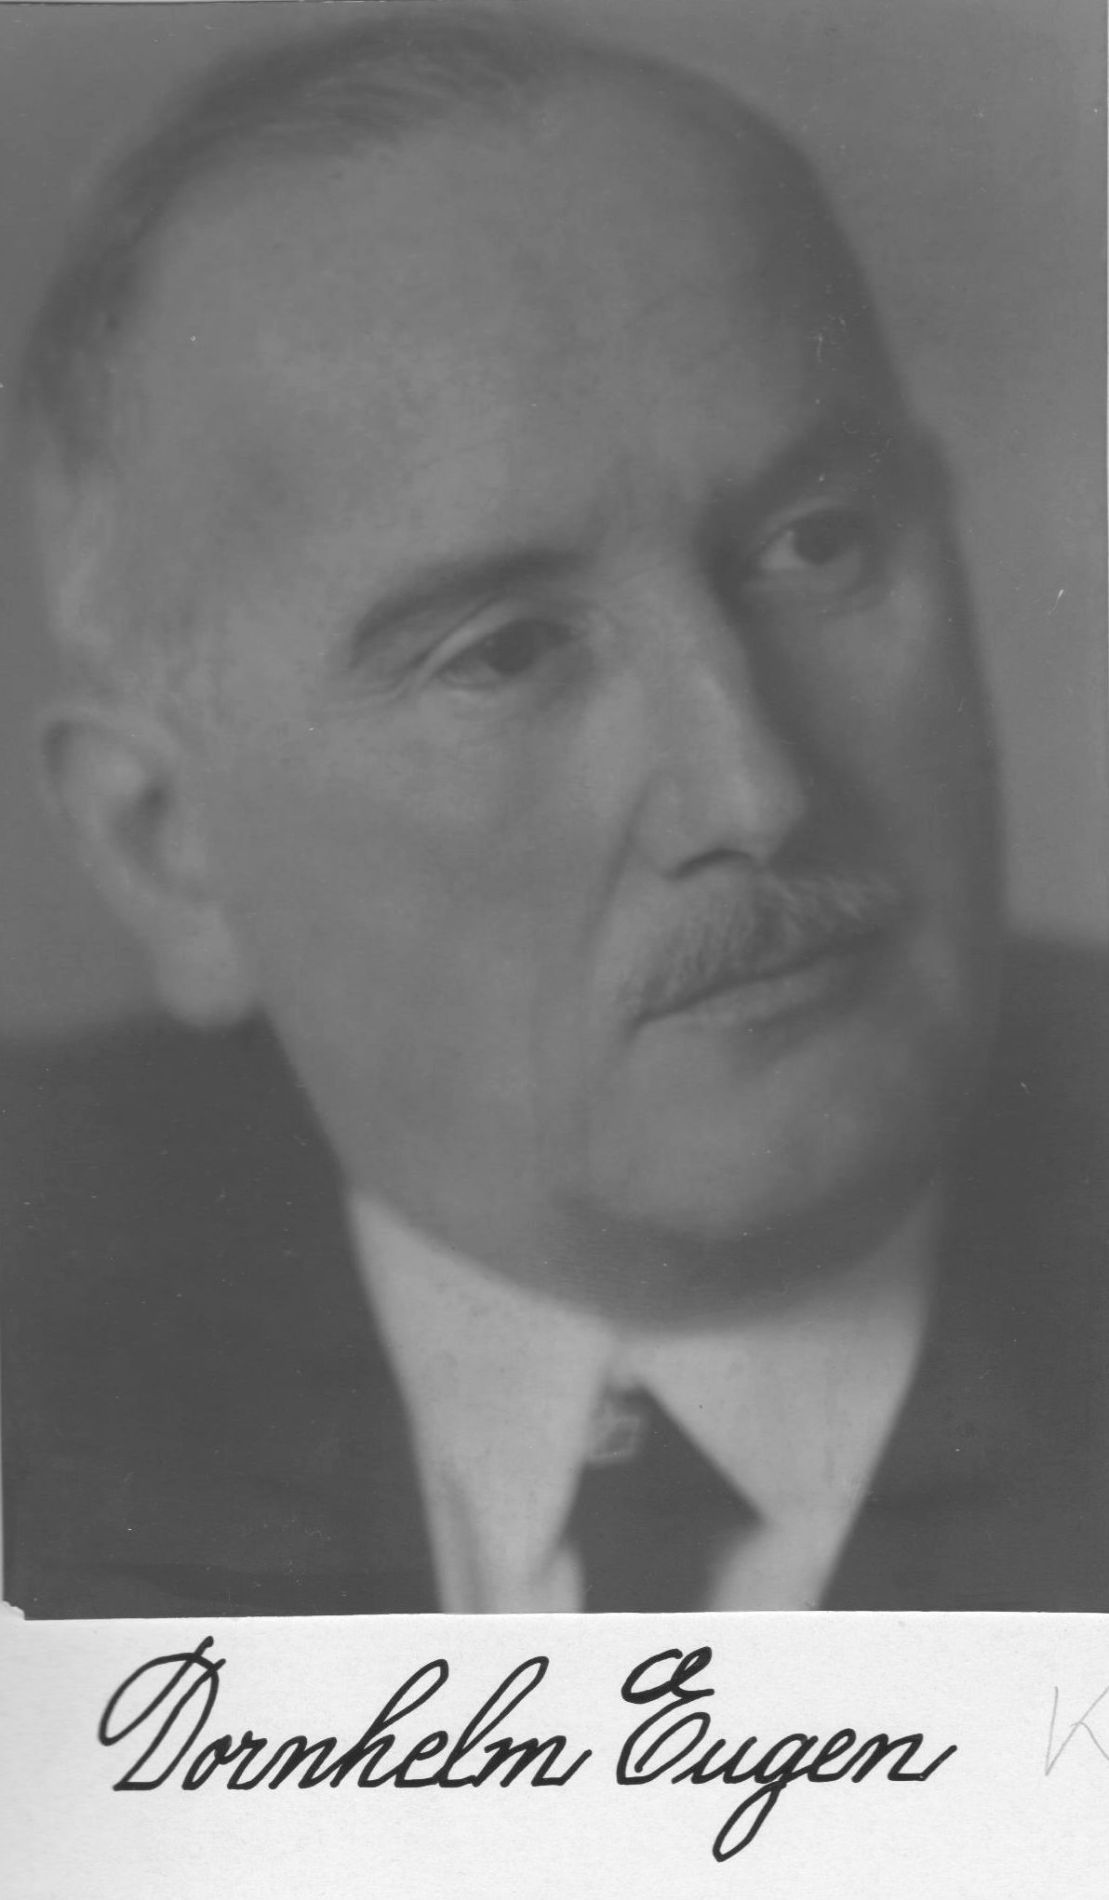 Eugen Dornhelm